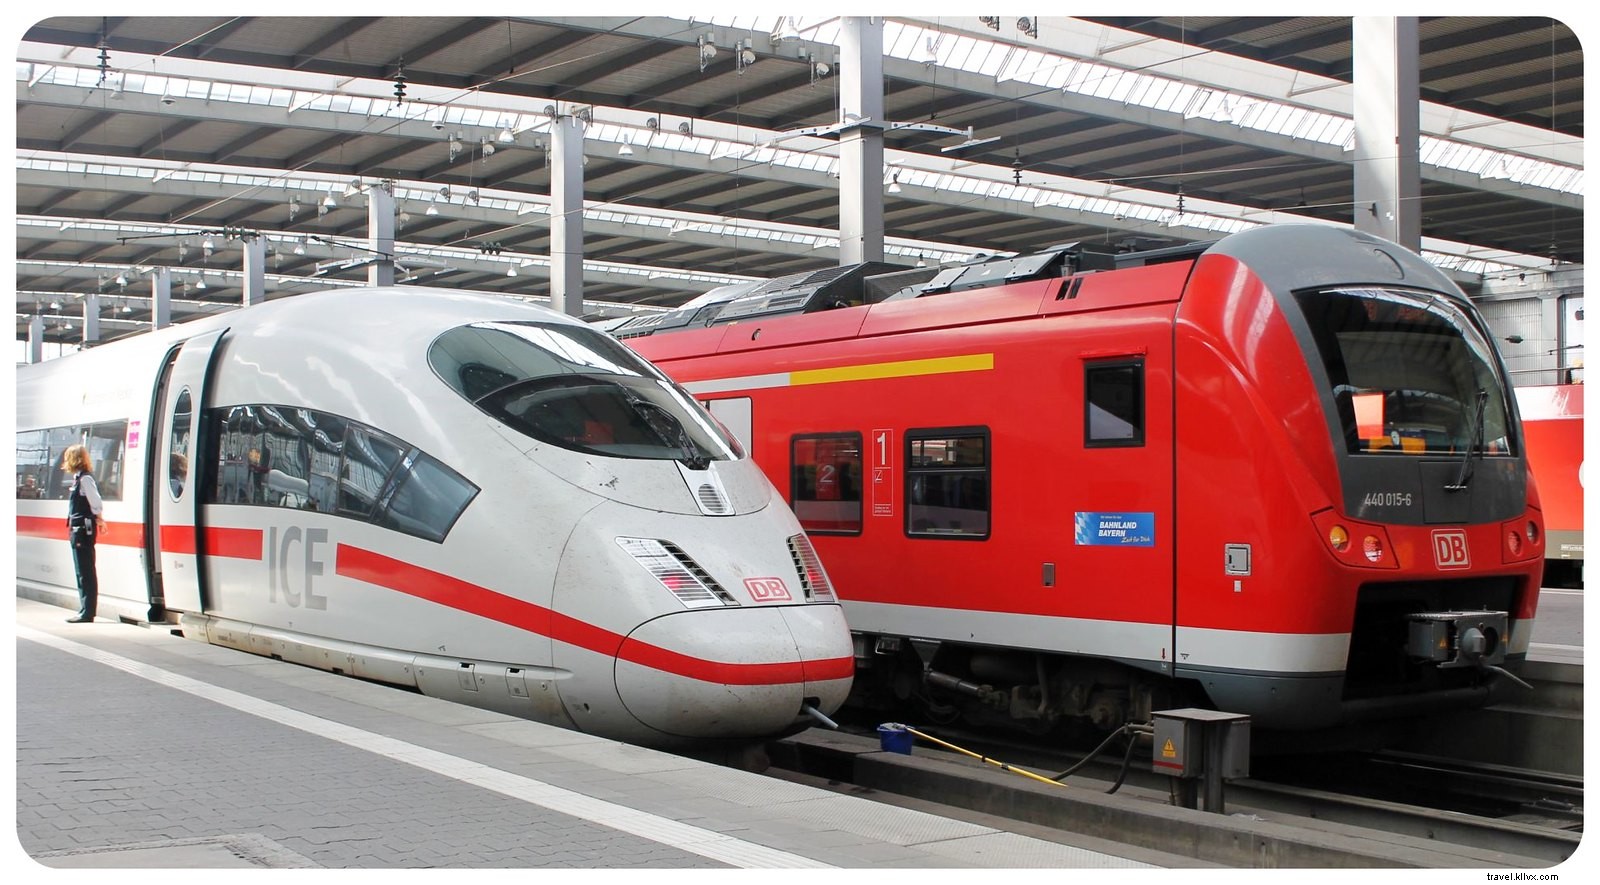 The Ultimate European Vacation:Europe By Rail (più la possibilità di vincere un pass globale RailEurope di prima classe per due!)